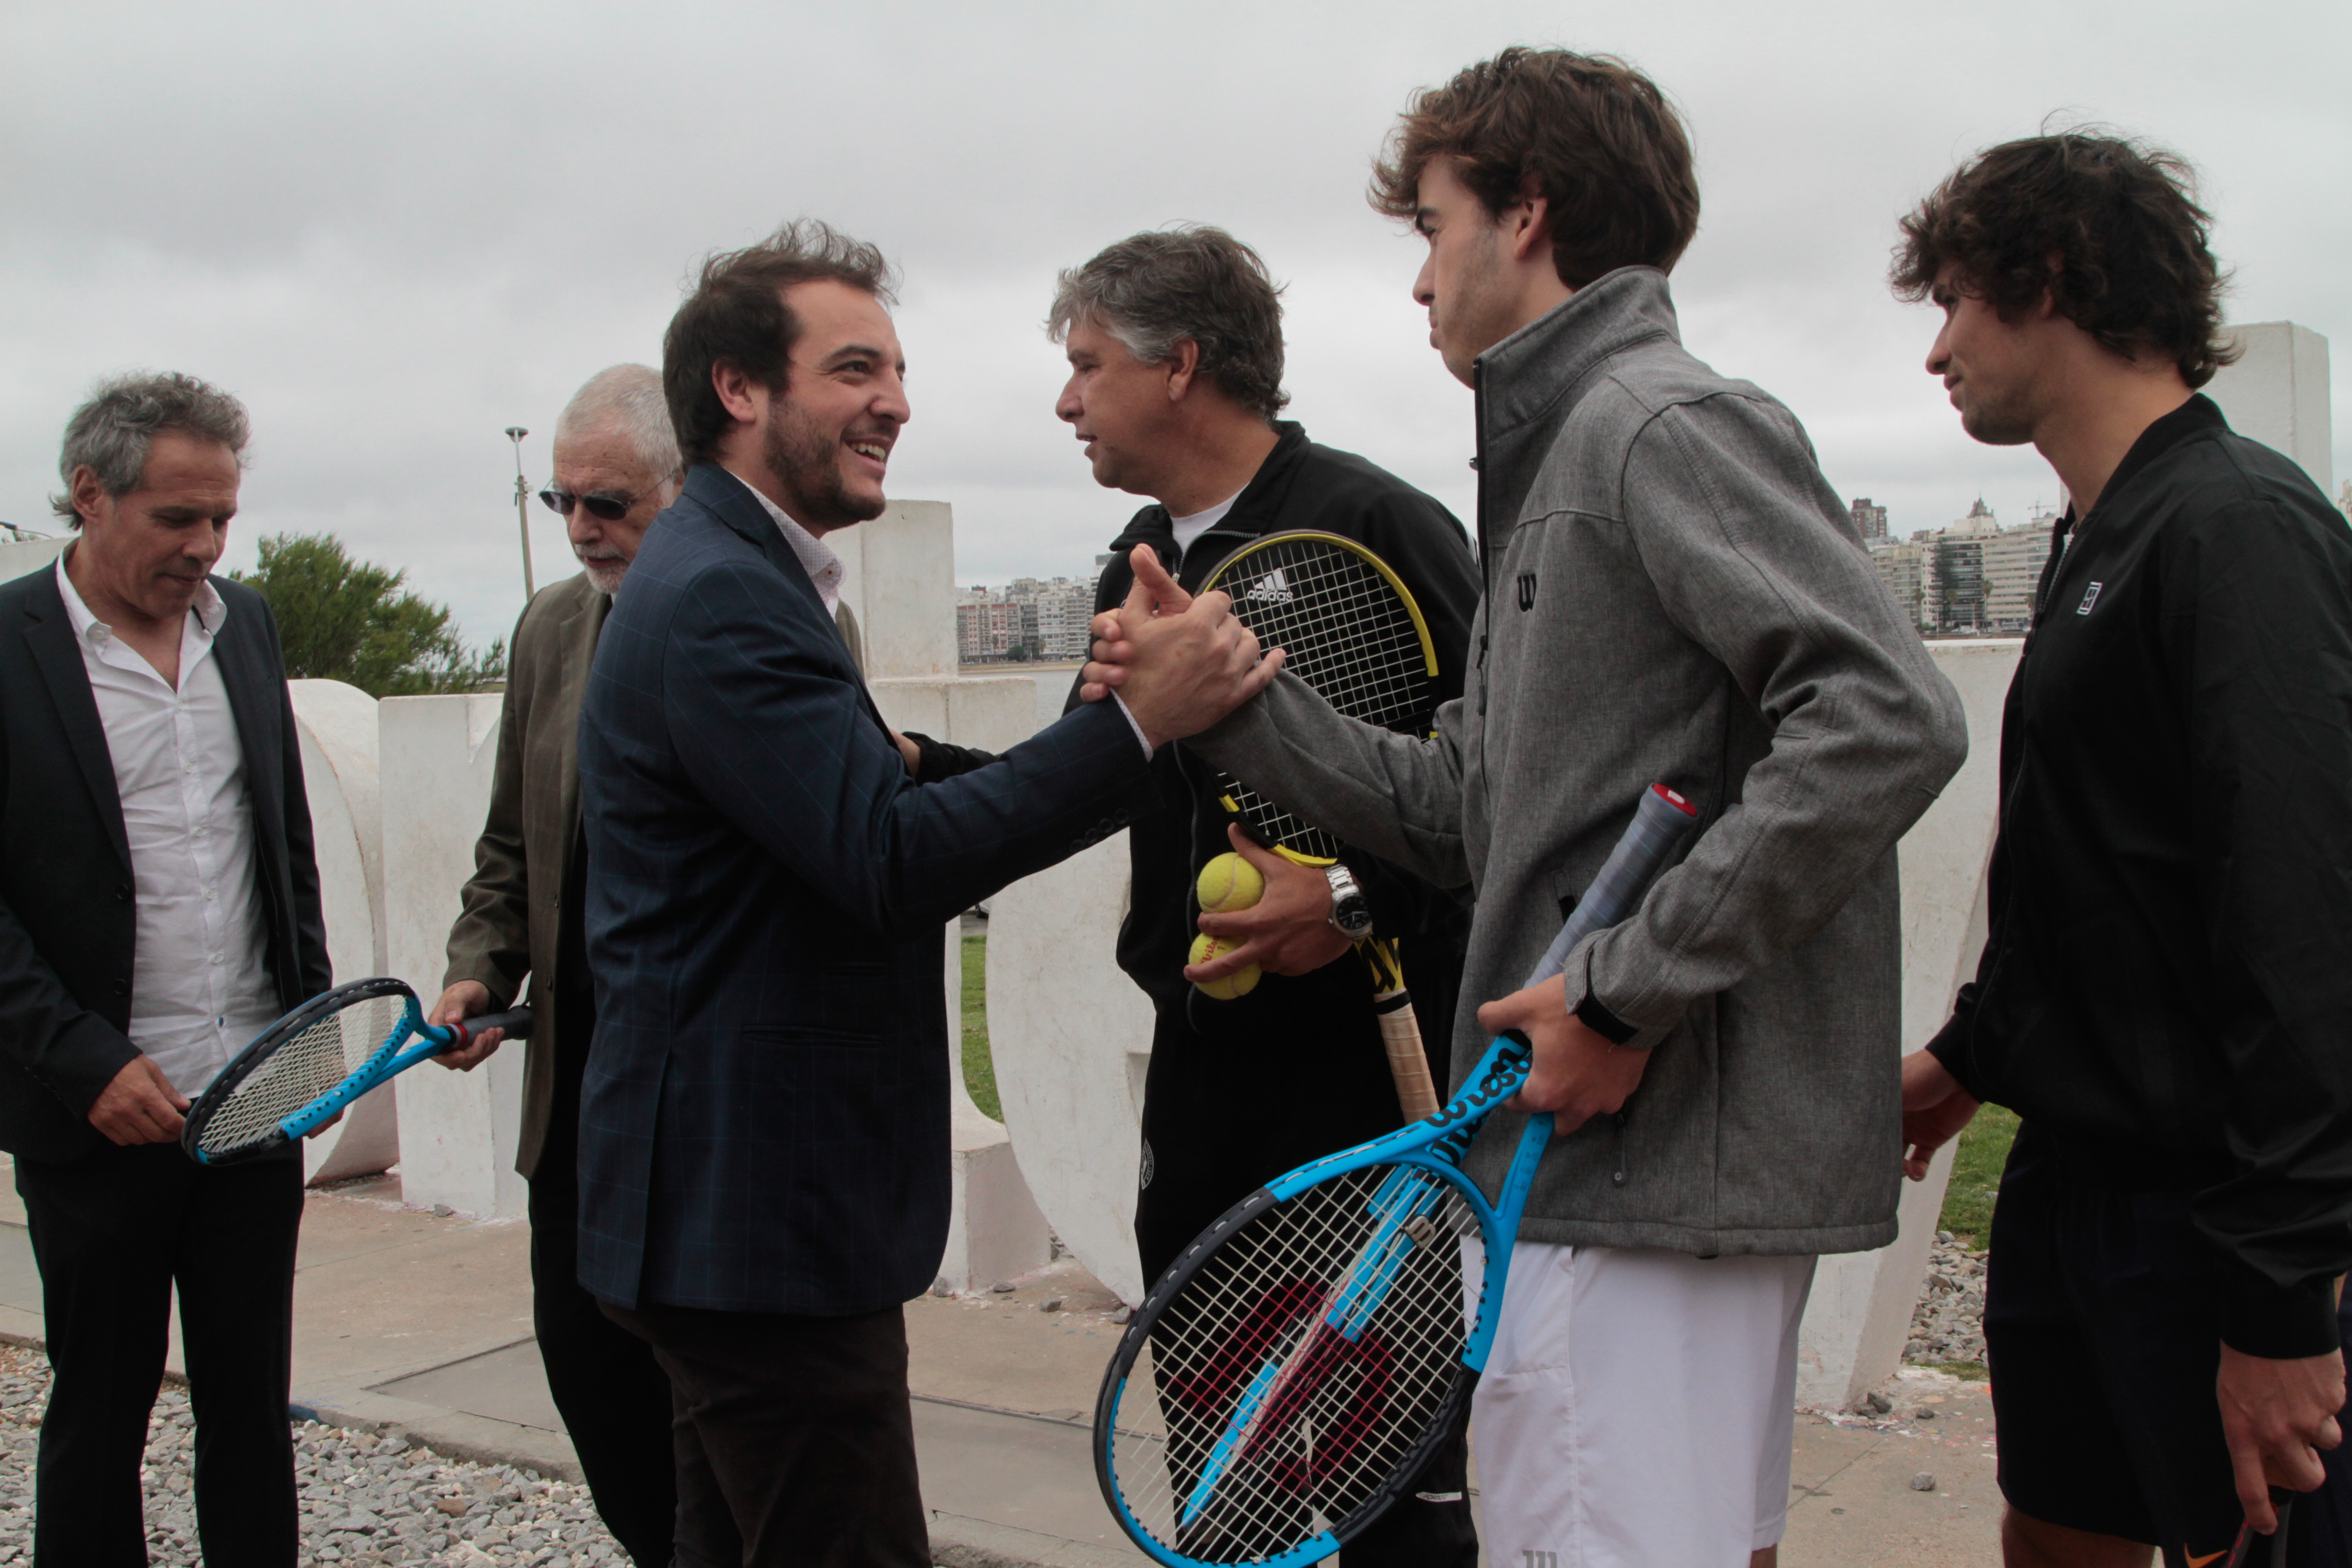 Lanzamiento de Uruguay Tenis Open